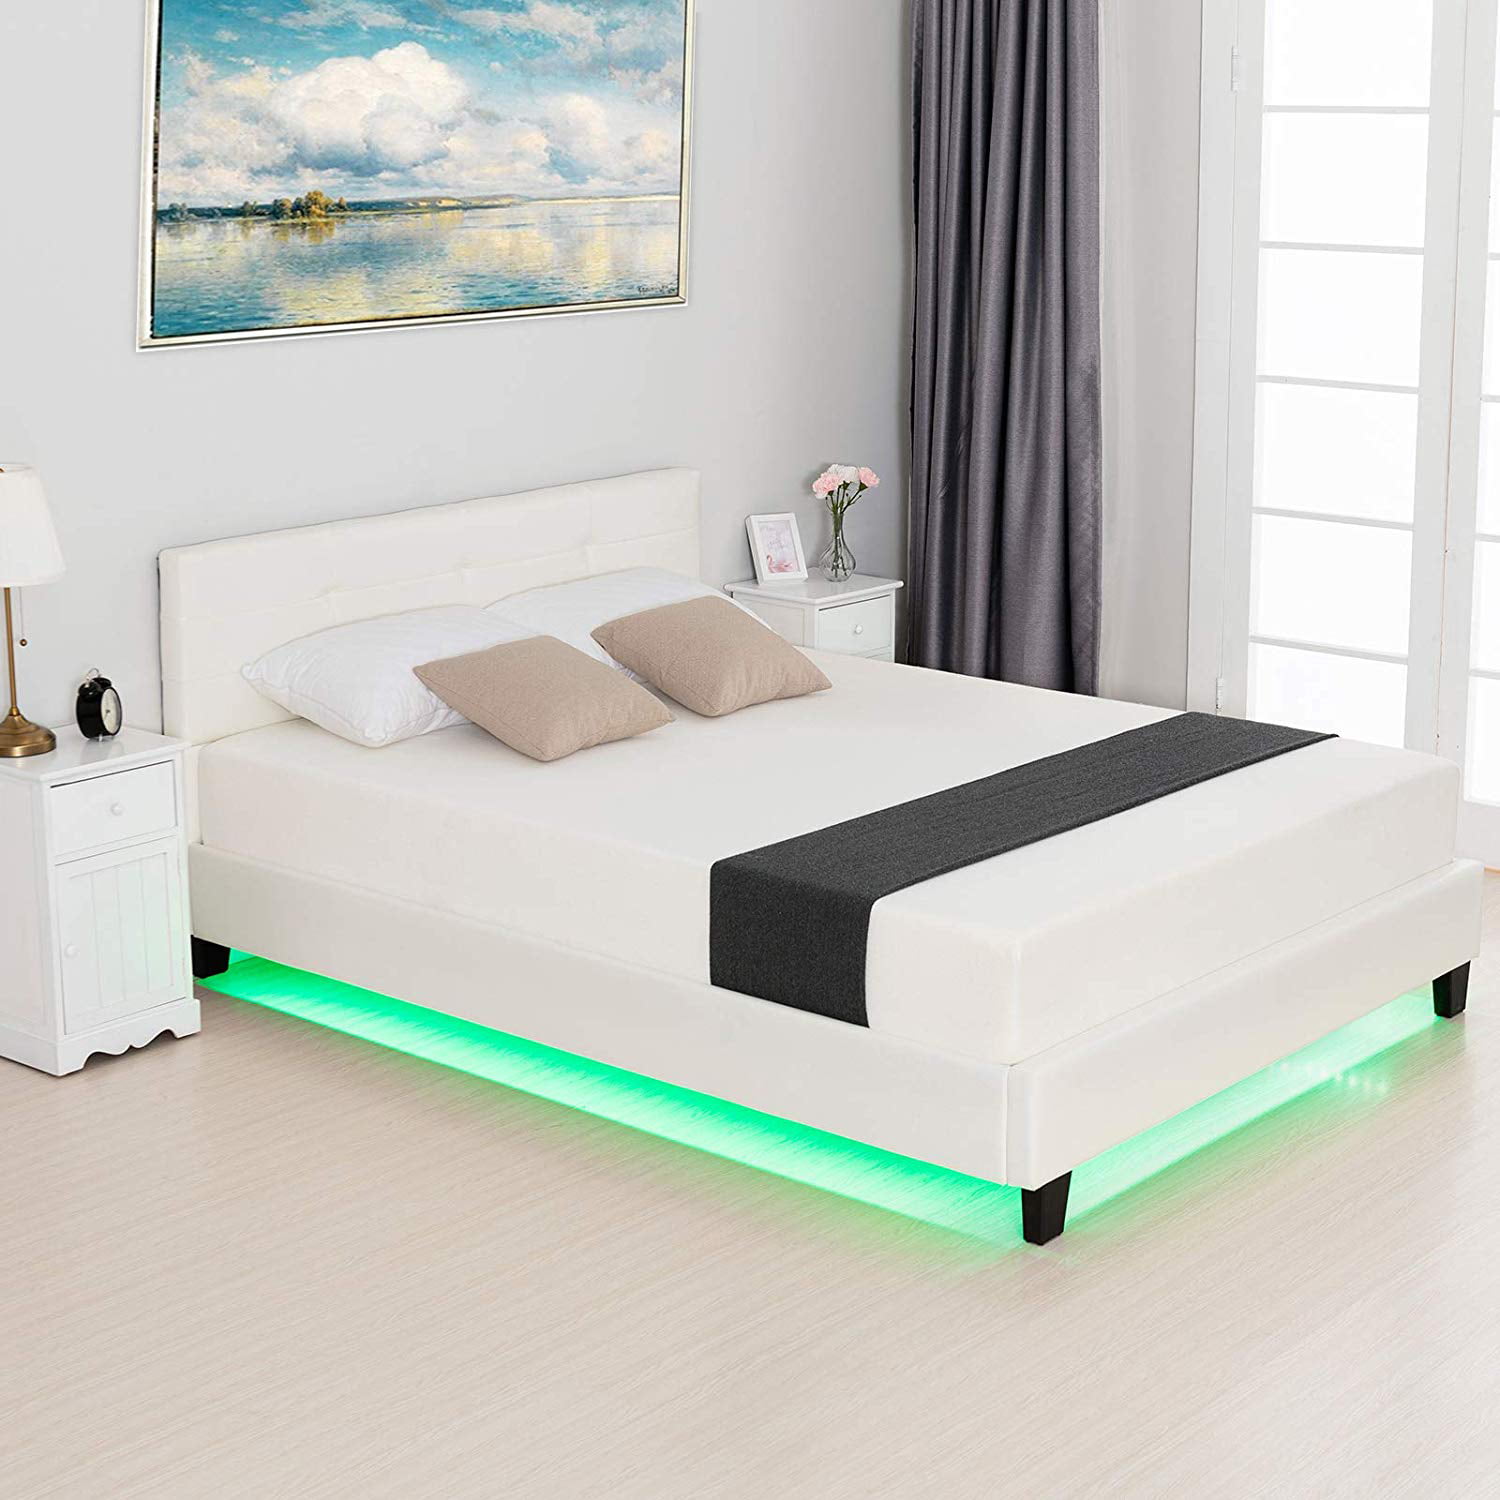 mecor Black Full Size LED Bed Frame with 8 Color Changing LED Lights Headboard Modern Upholstered Faux Leather Platform Bed Black//Full Solid Wooden Slats Support